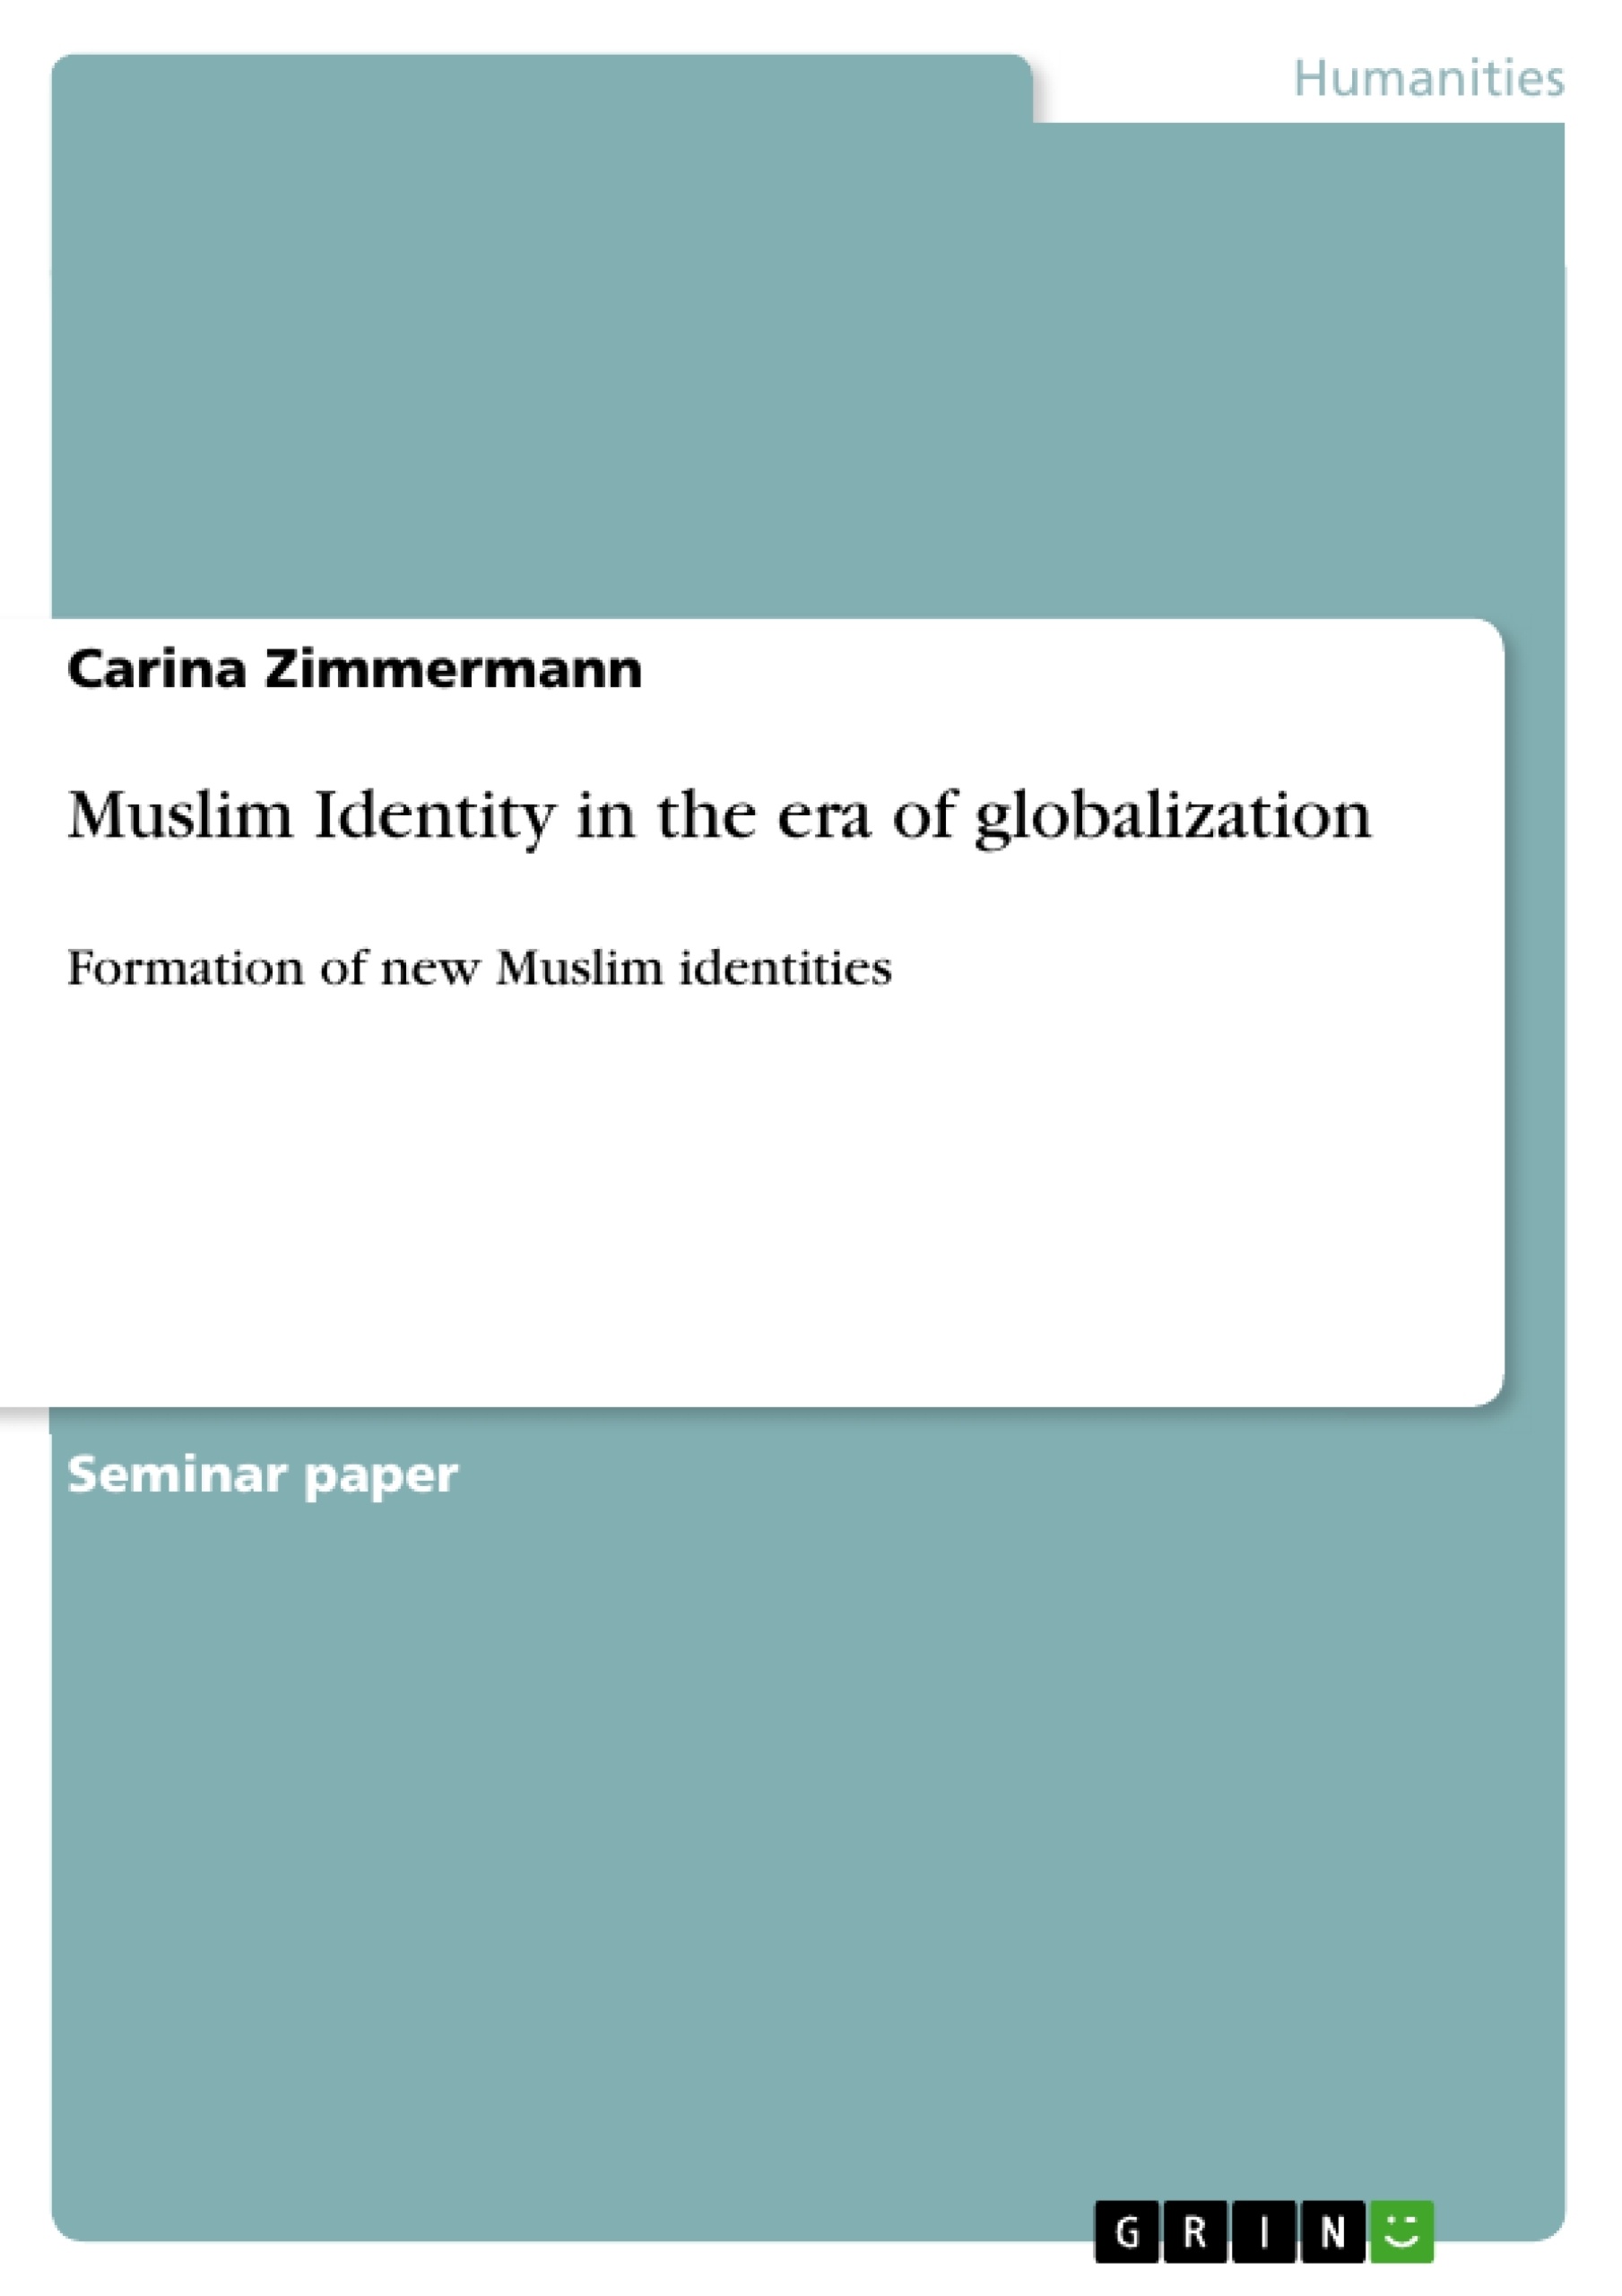 Title: Muslim Identity in the era of globalization